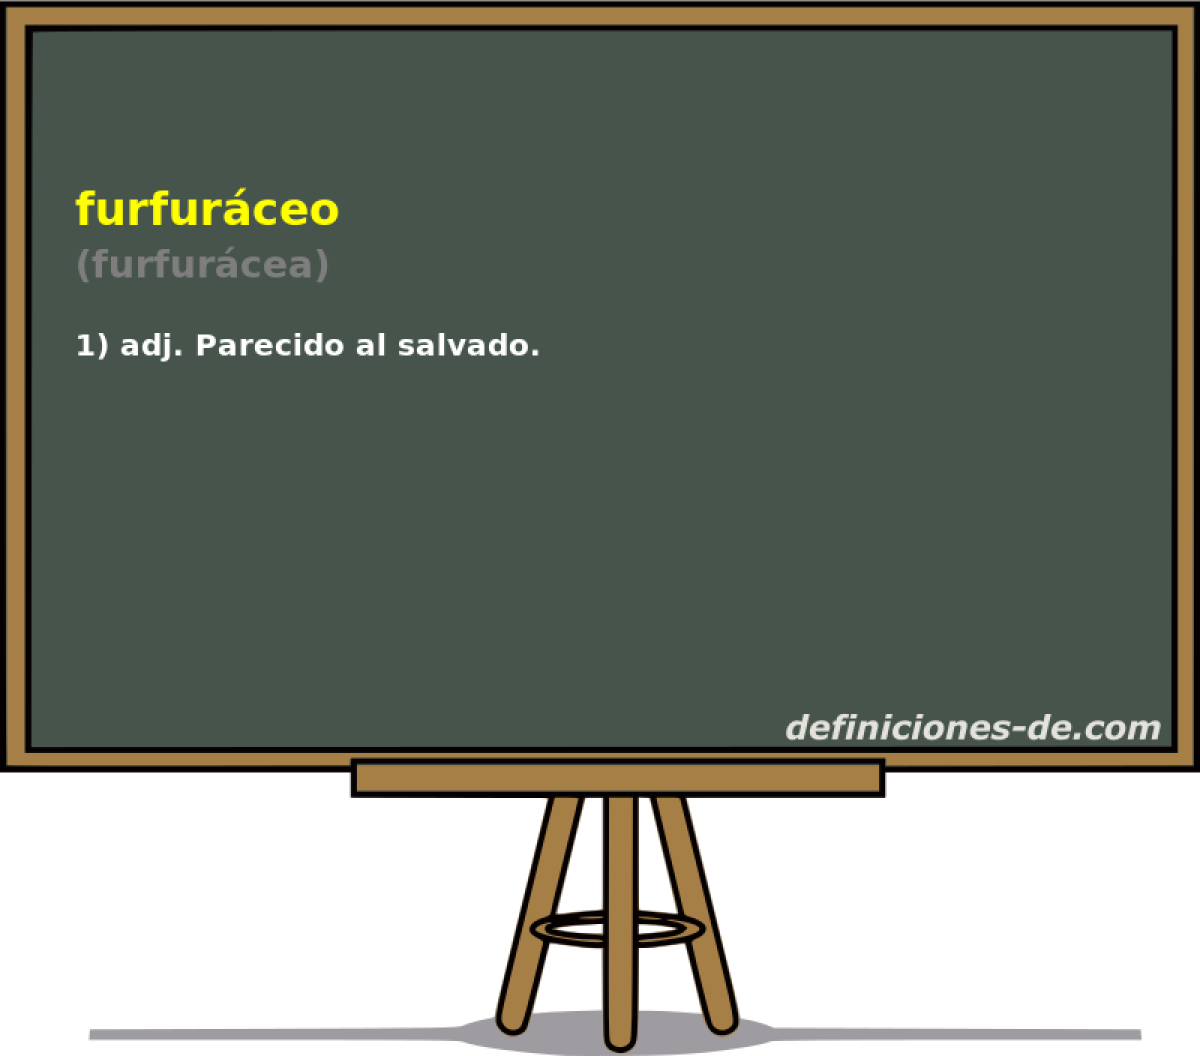 furfurceo (furfurcea)